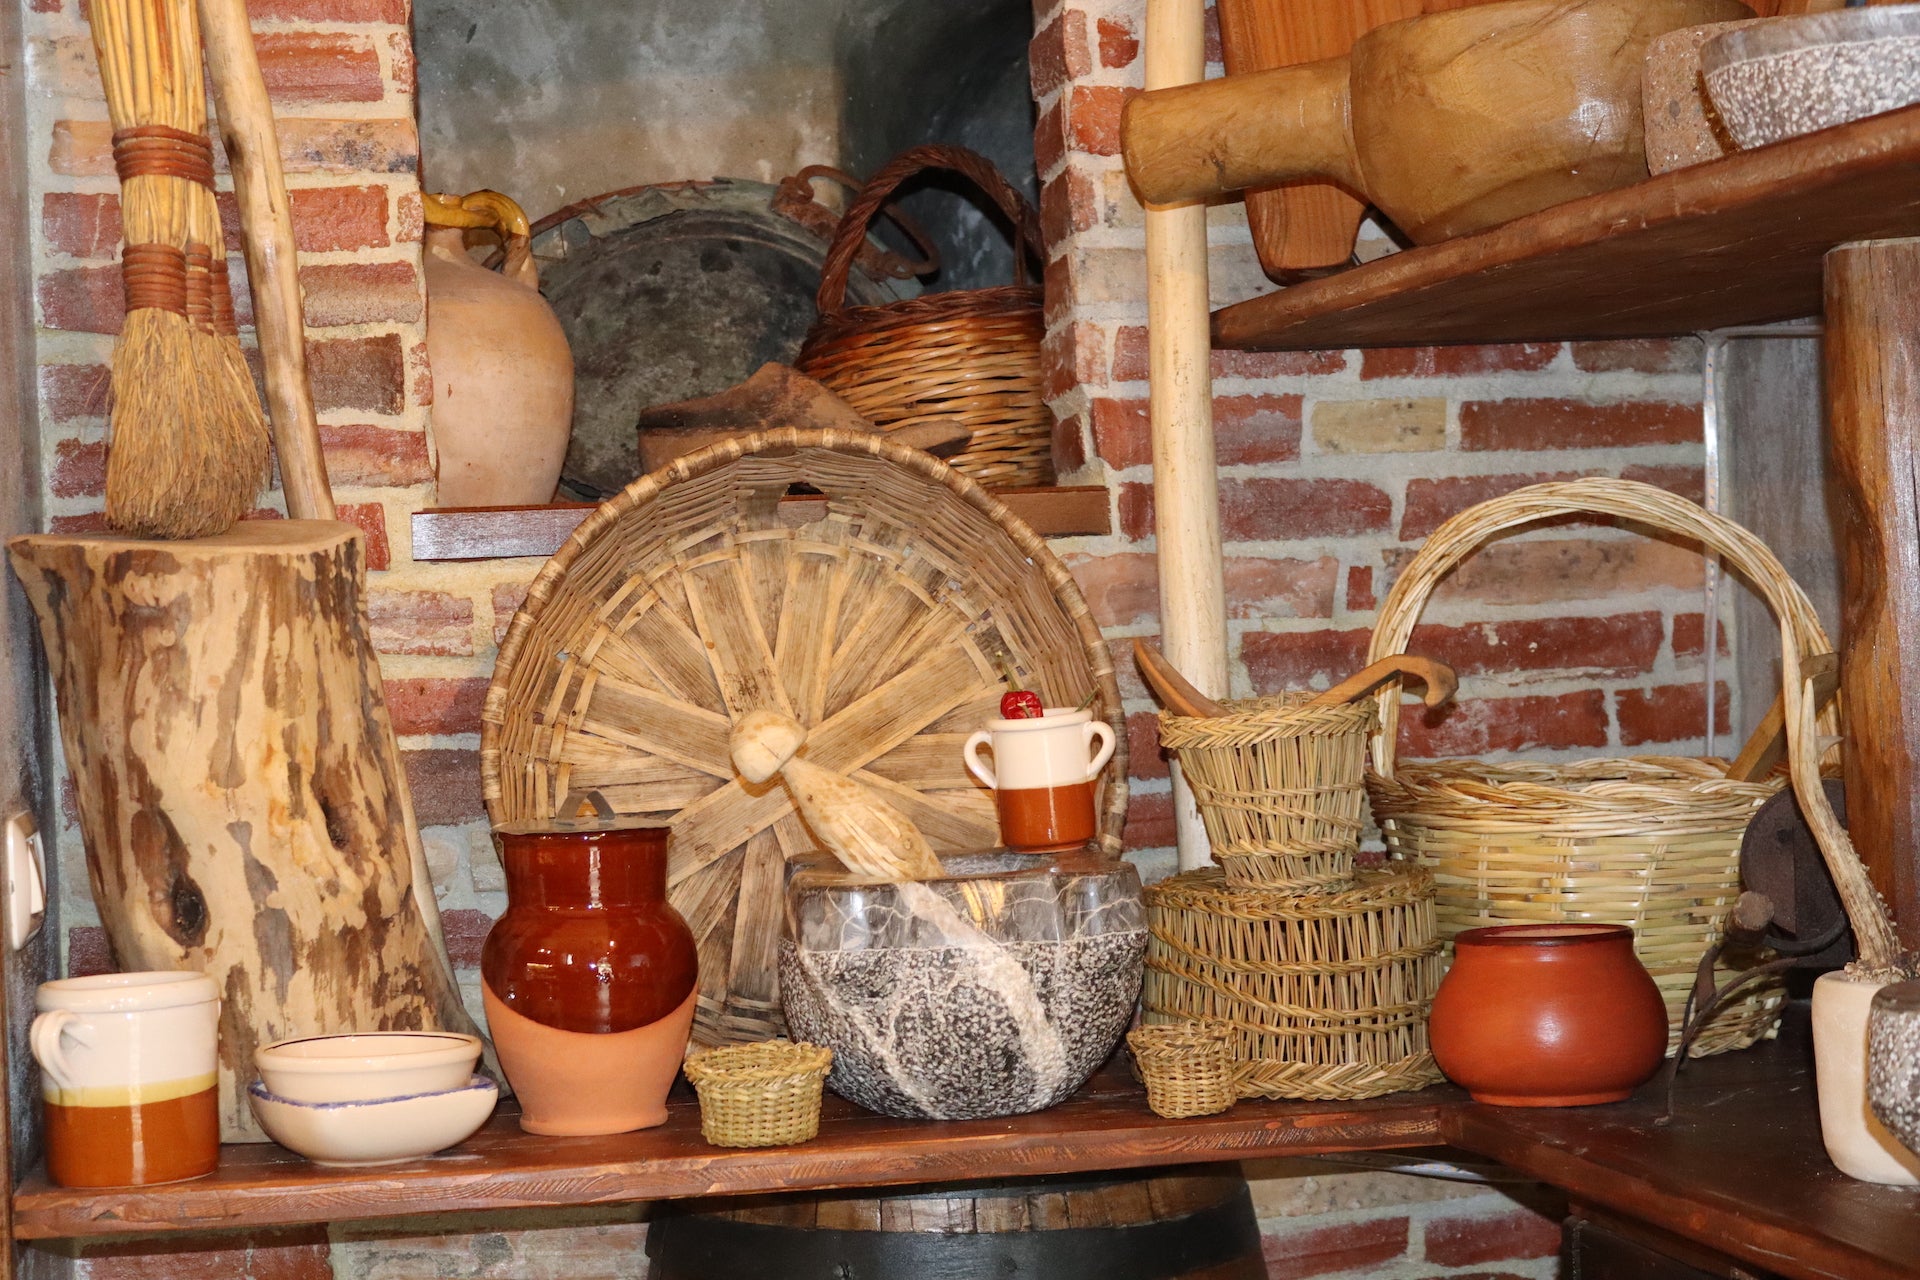 artigianato tipico e autentico del Parco Nazionale del Pollino, lavorazioni in pietra ceramica legno evimini